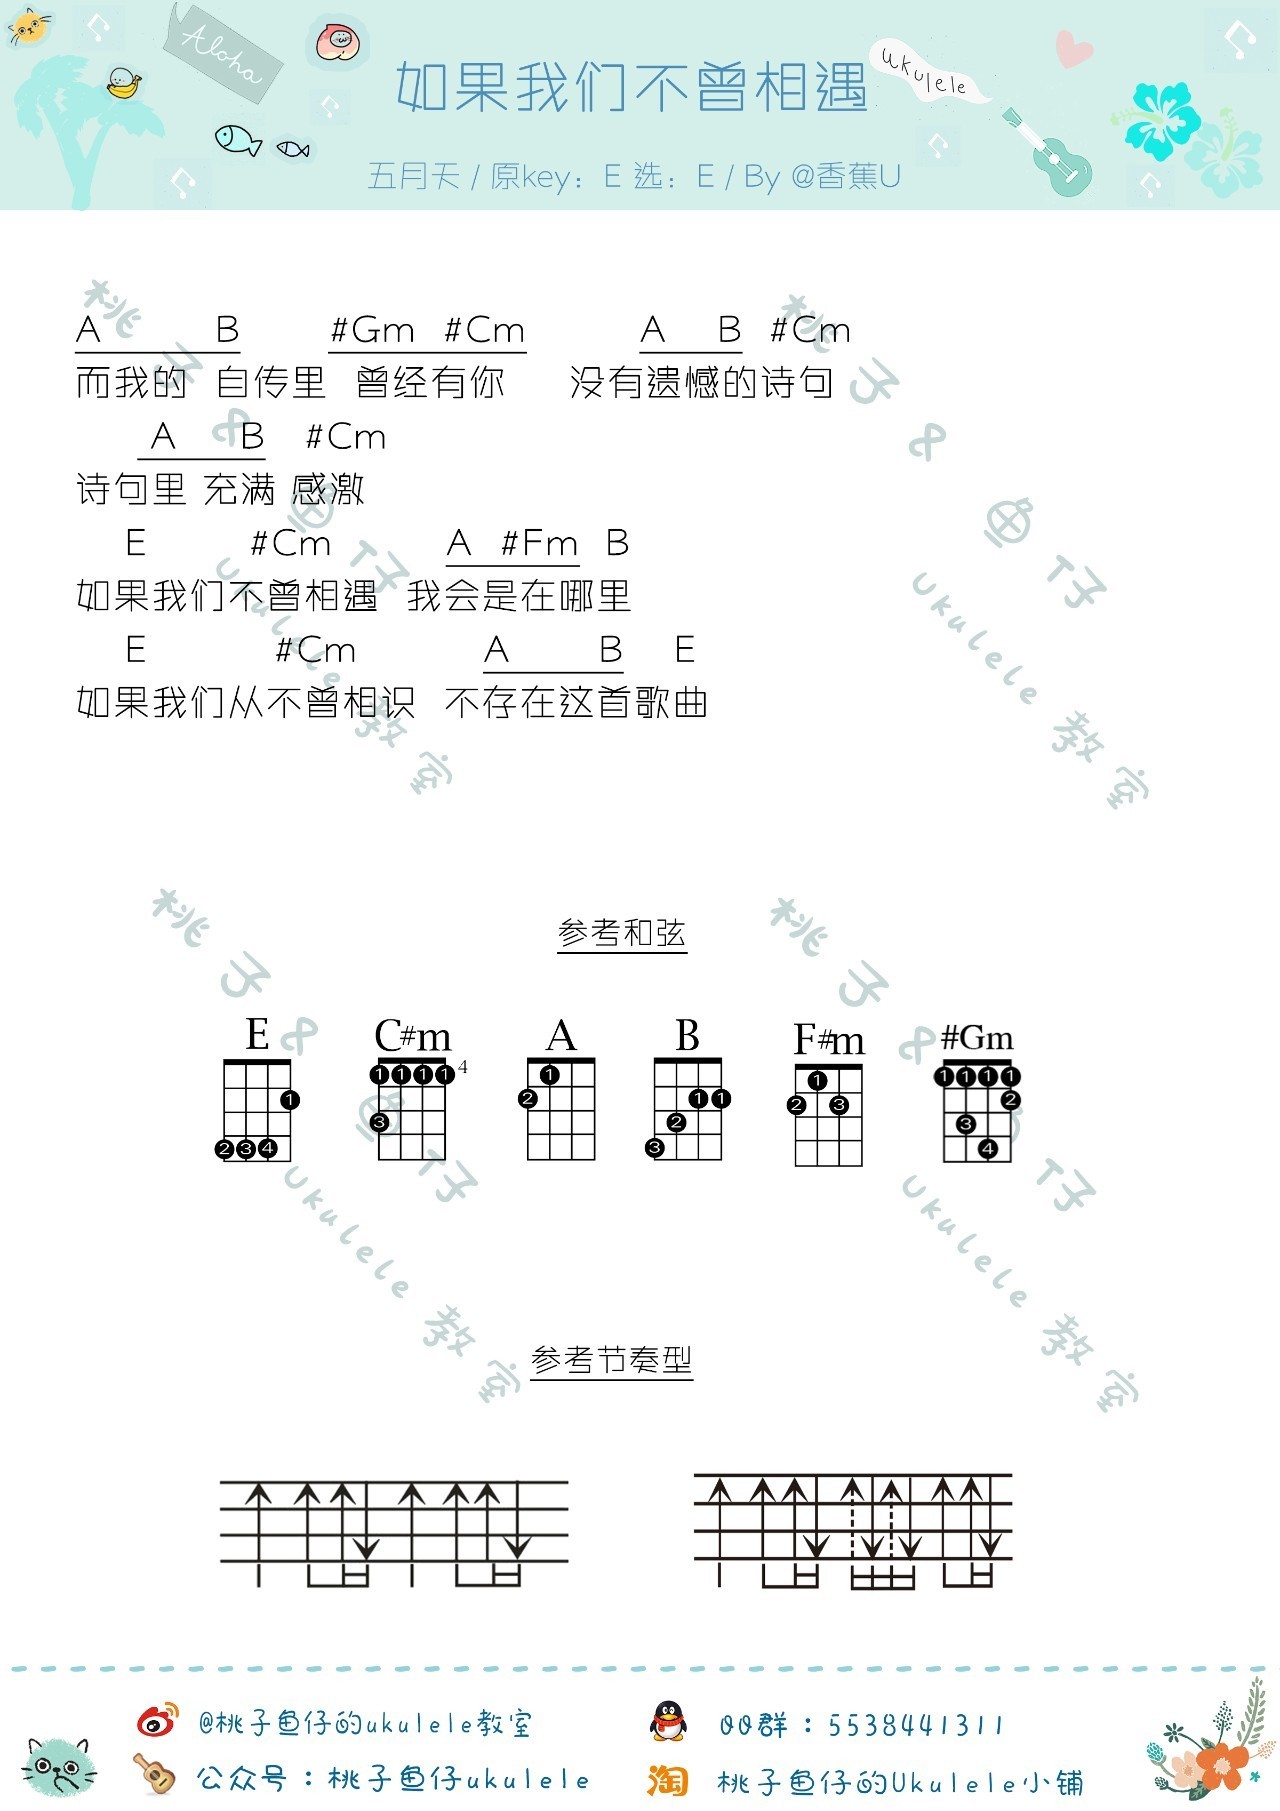 ★ 五月天-如果我们不曾相遇 小提琴谱pdf-香港流行钢琴协会琴谱下载 ★